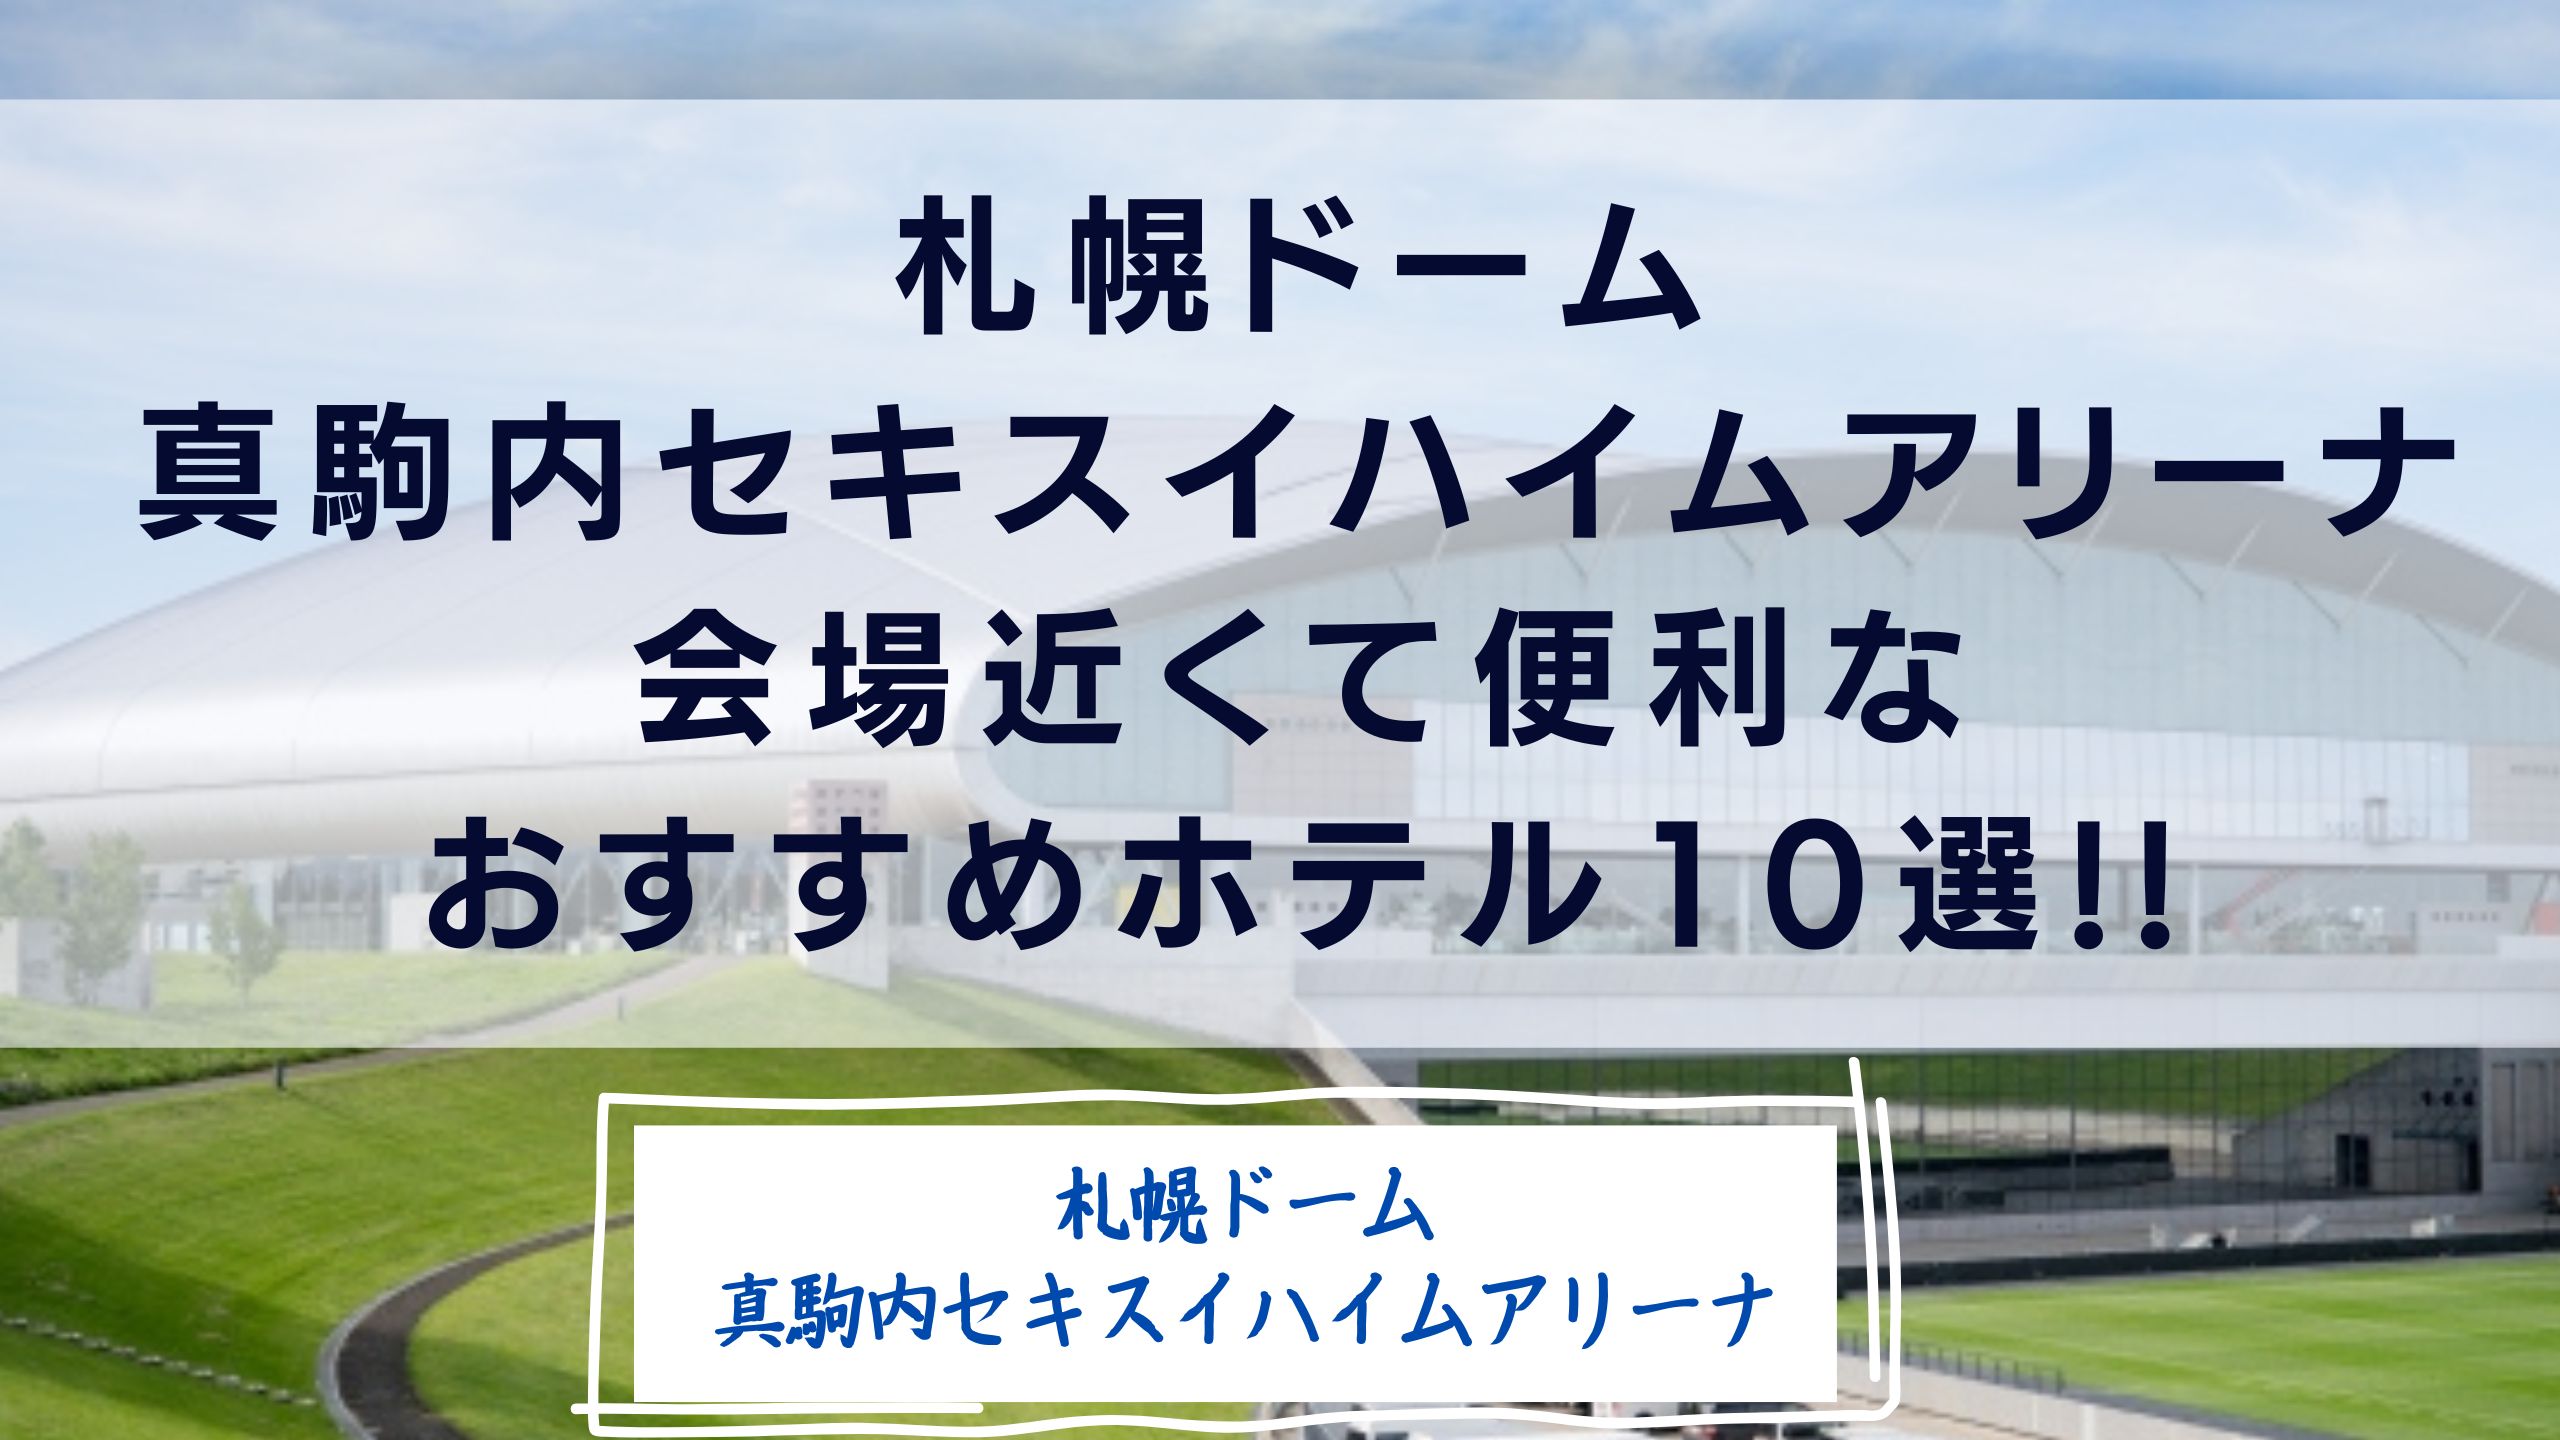 札幌ドーム/真駒内セキスイハイムアリーナ近隣のホテルほ紹介しています